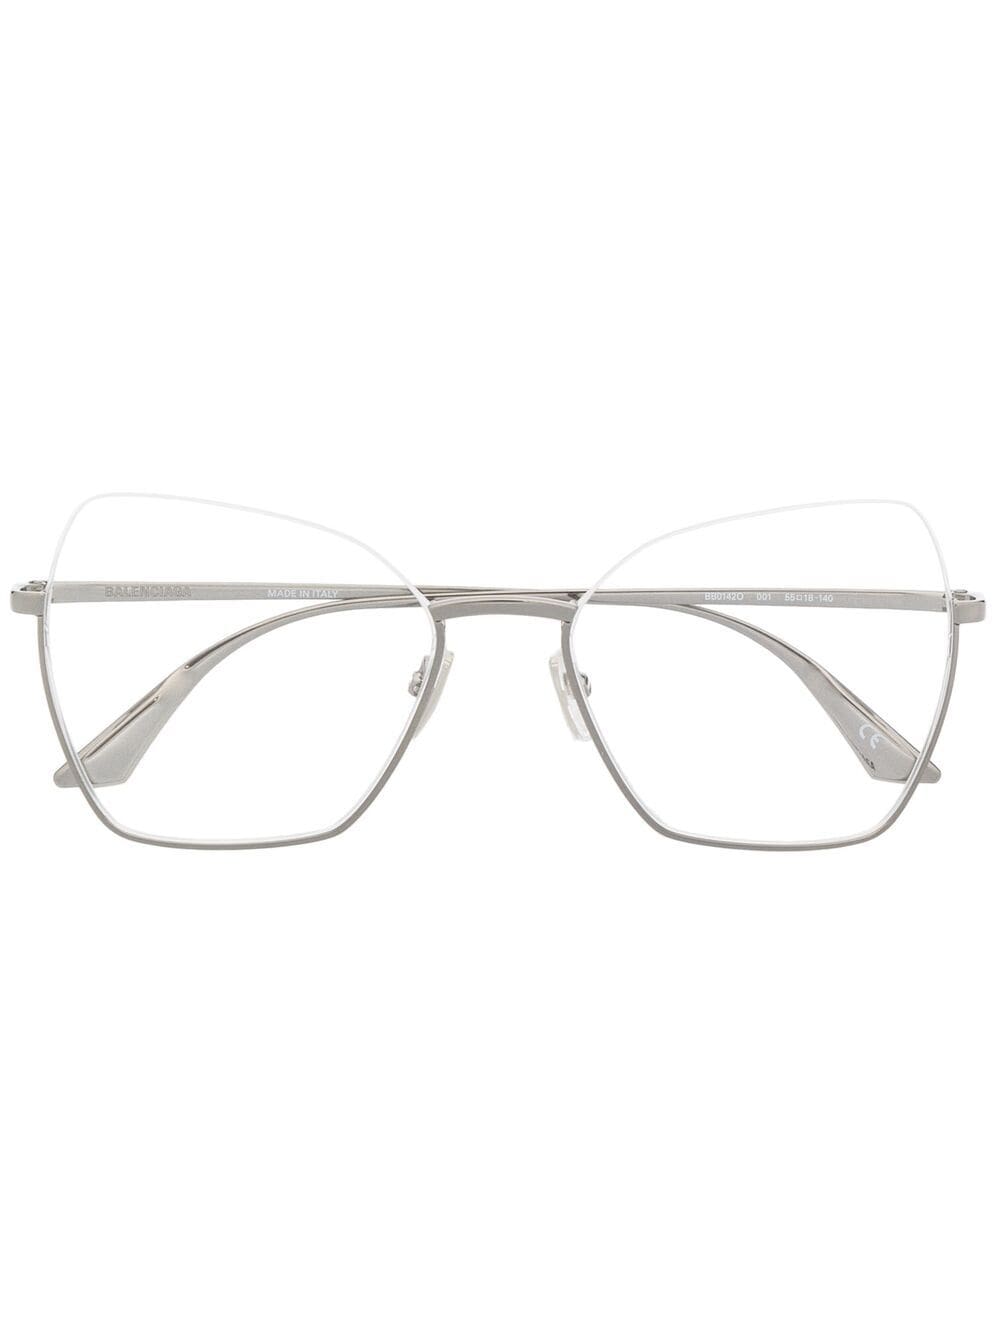 фото Balenciaga eyewear очки в массивной оправе